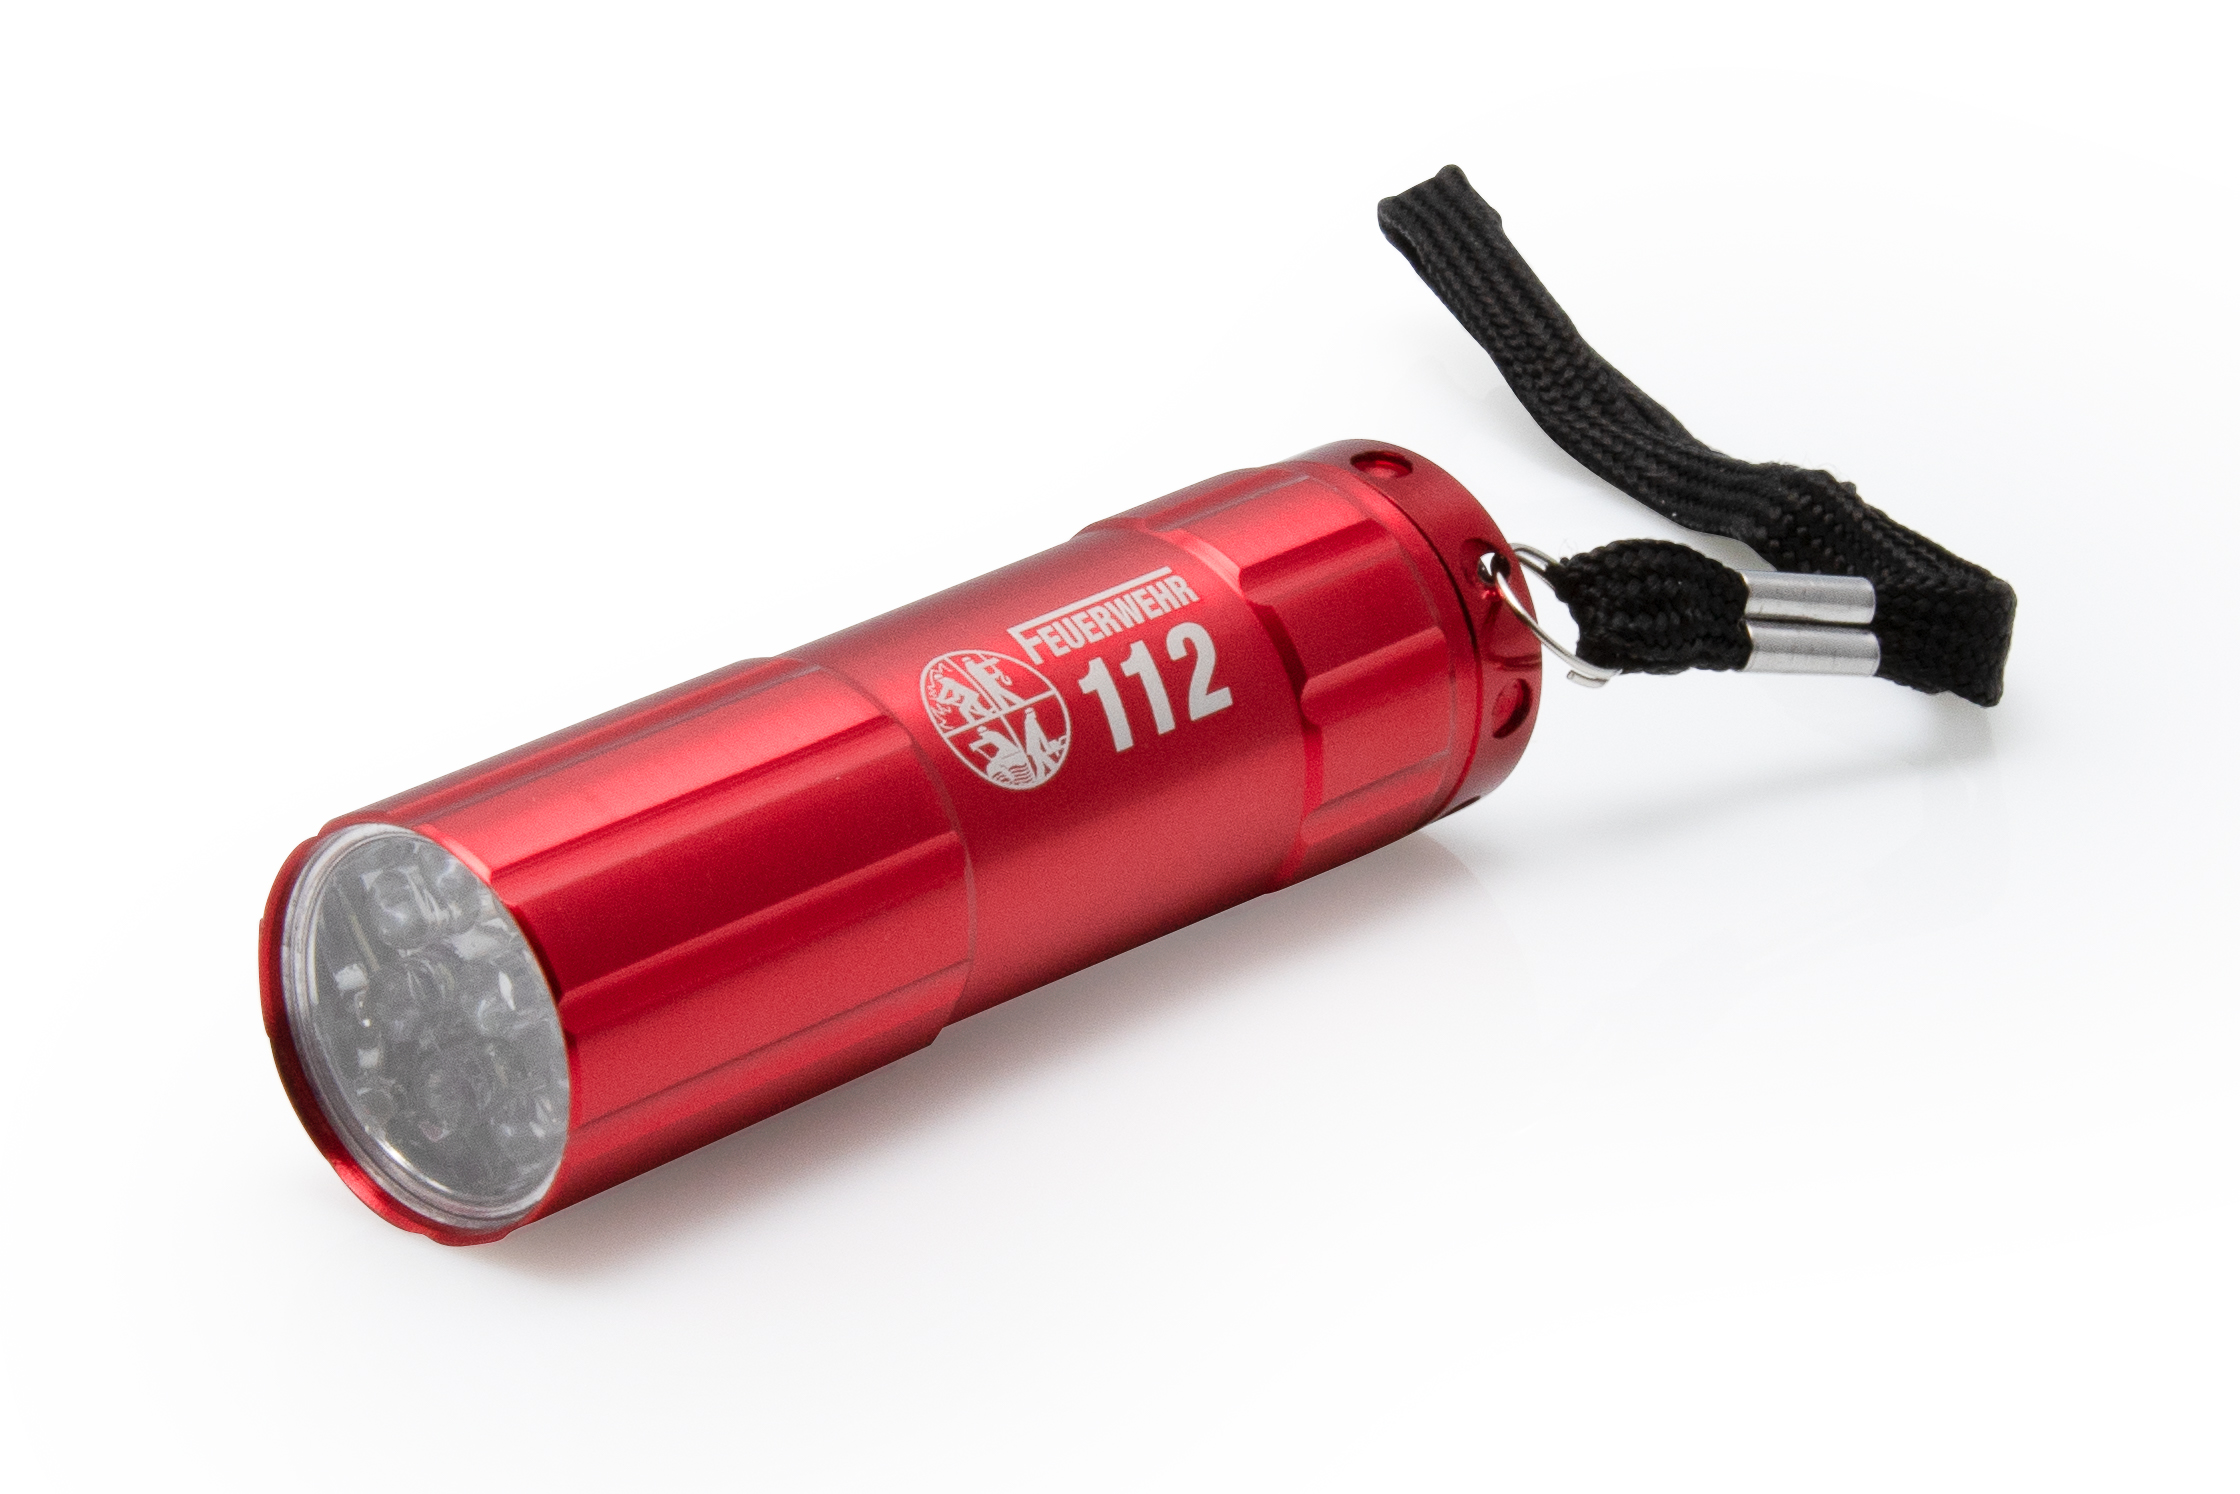 Feuerwehr LED Taschenlampe rot mit Gravur FEUERWEHR 112 und DFV Signet inkl. 3 AAA Batterien